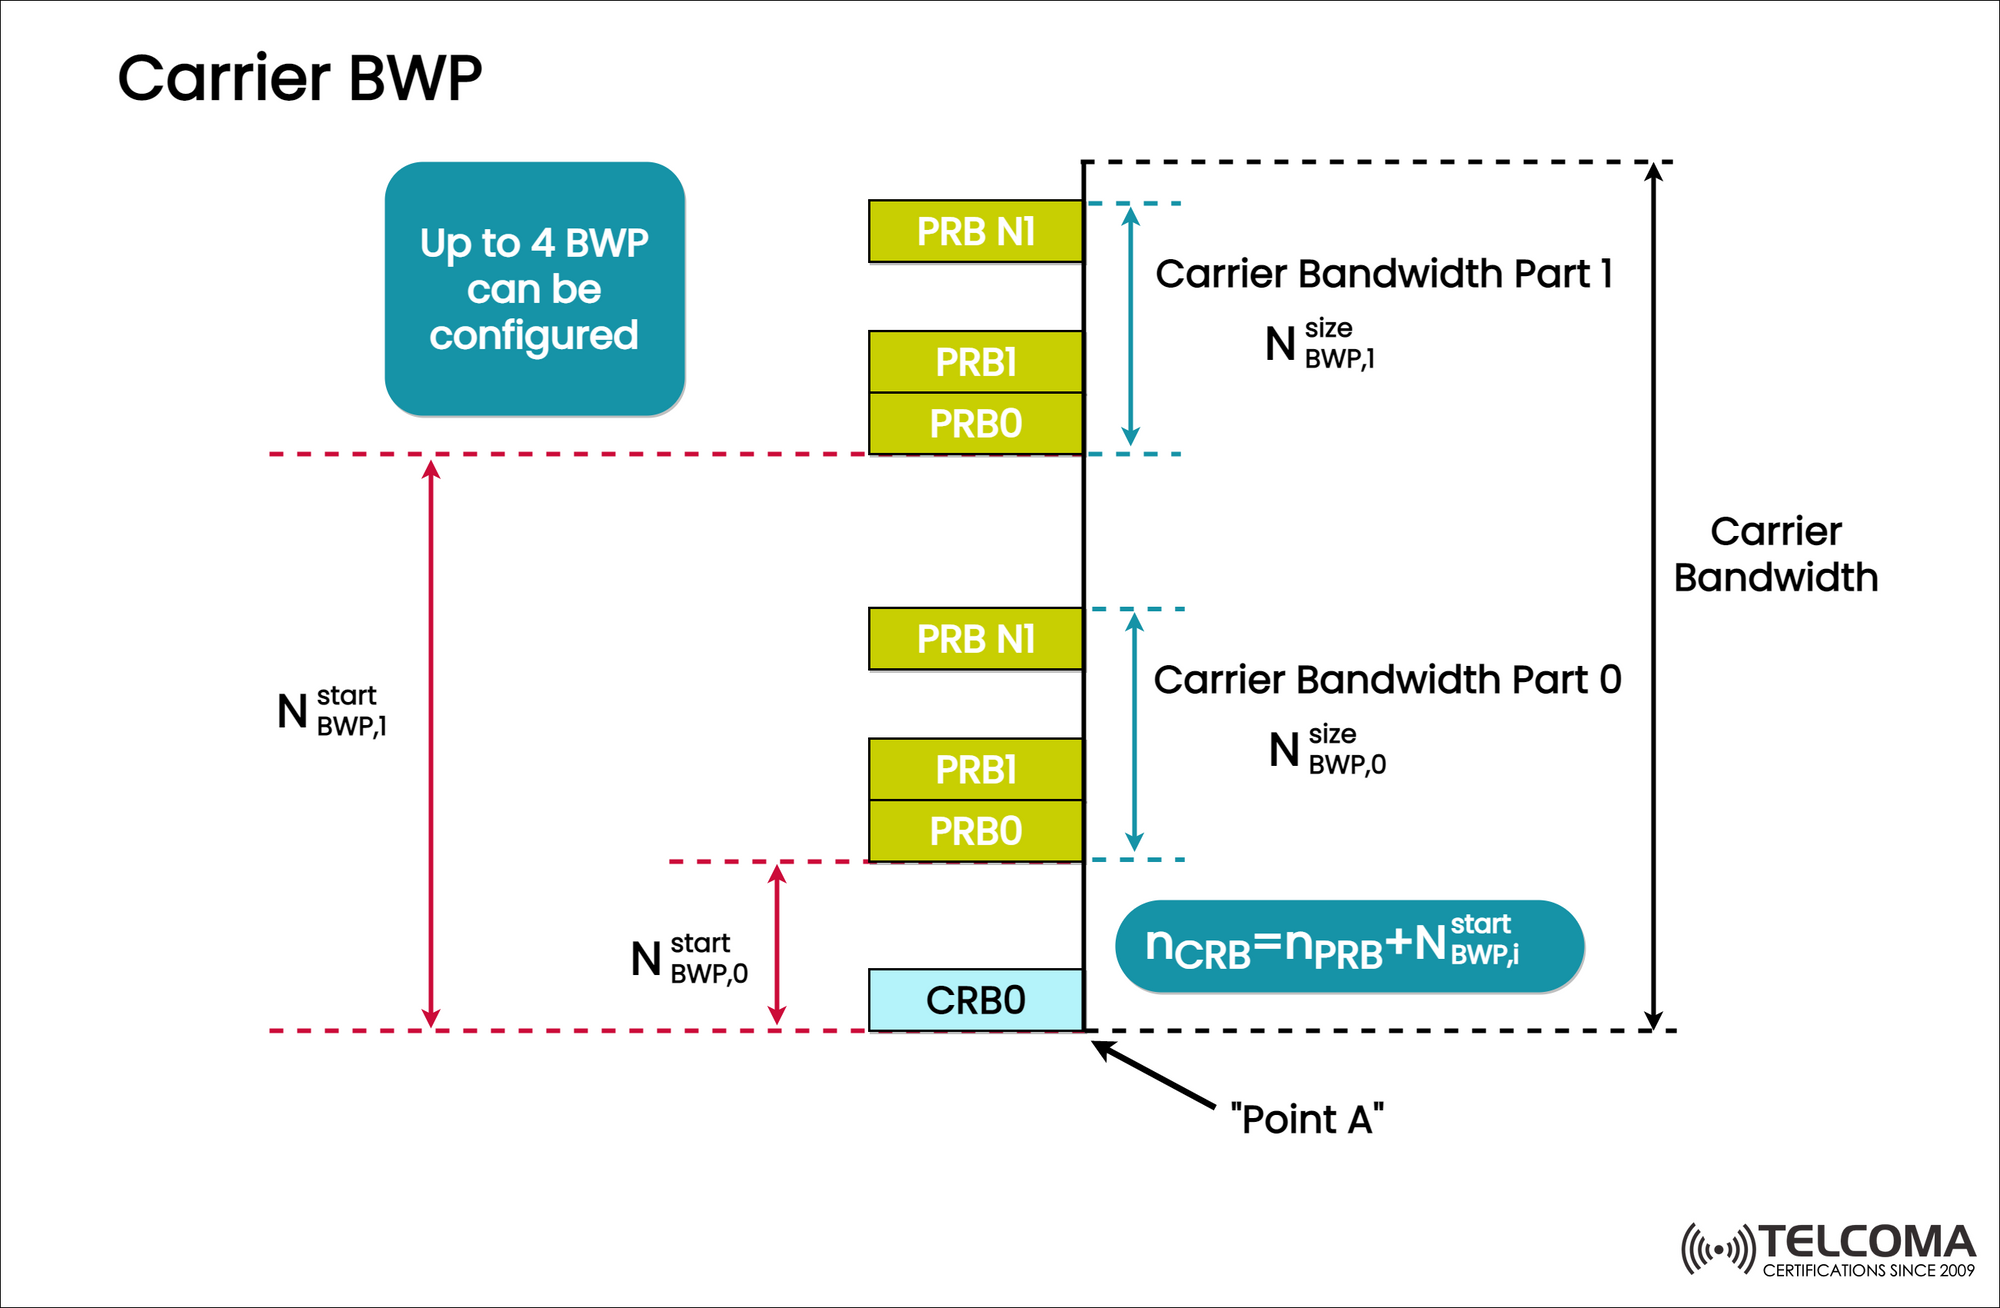 Bandwidth Part (BWP)